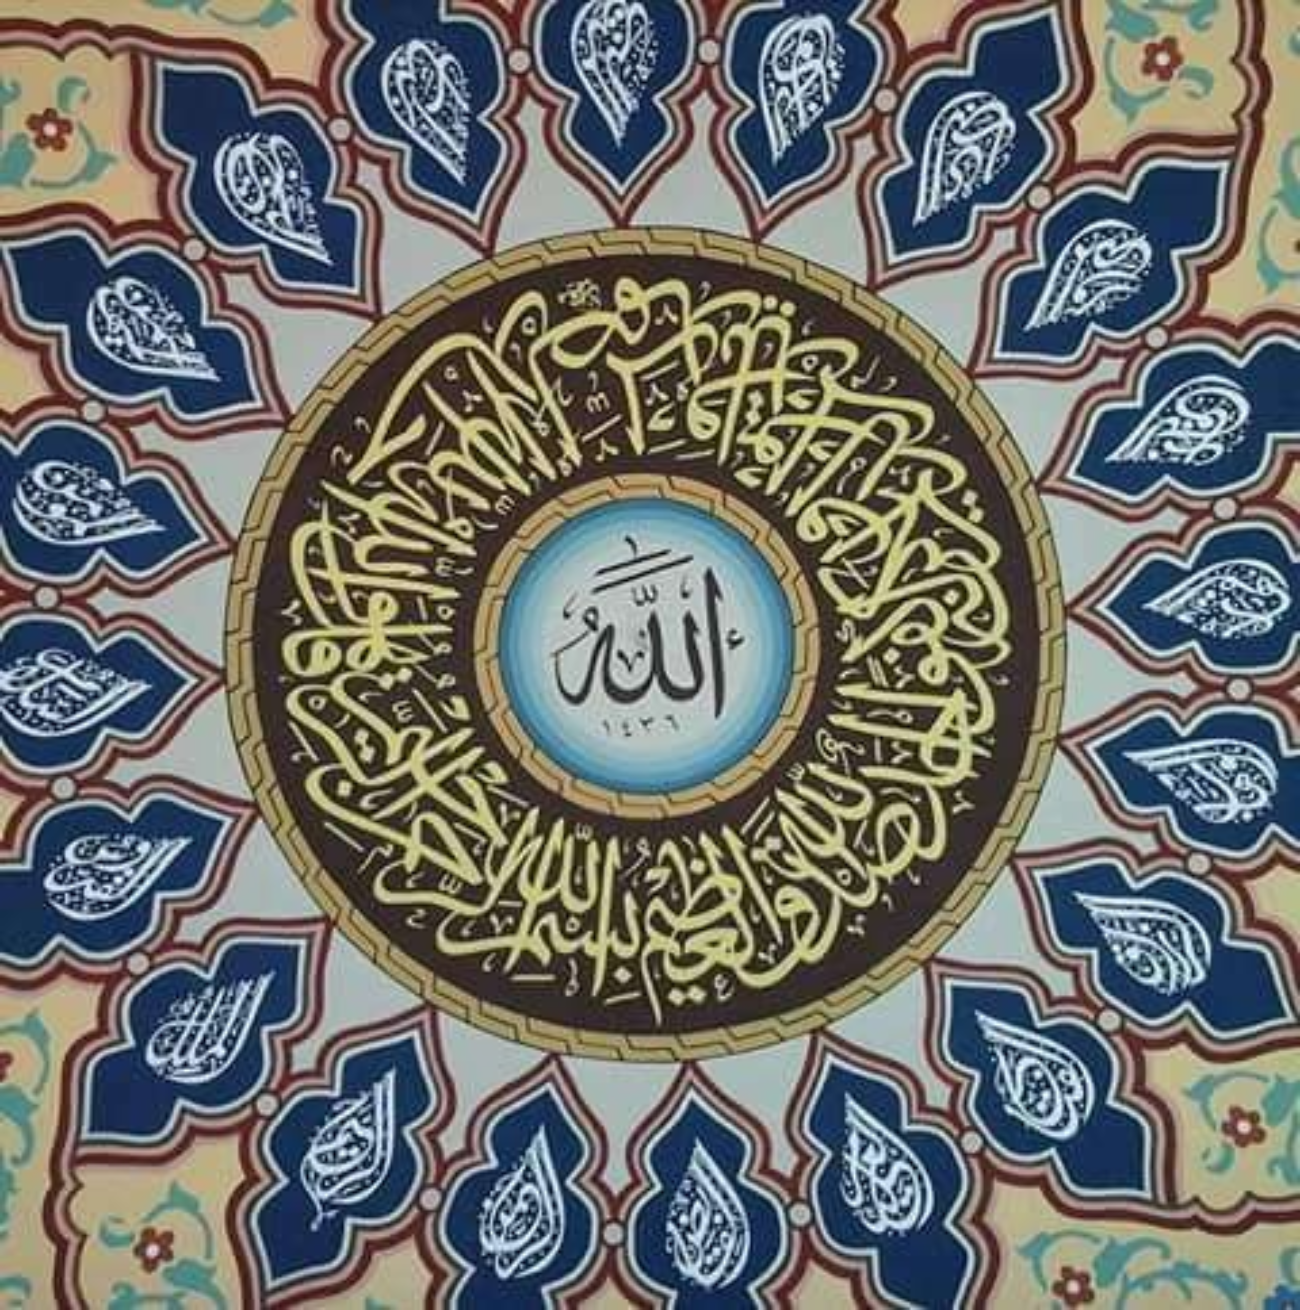 Kaligrafi dalam masjid, menambah keteduhan dalam hati. (Ilustrasi)